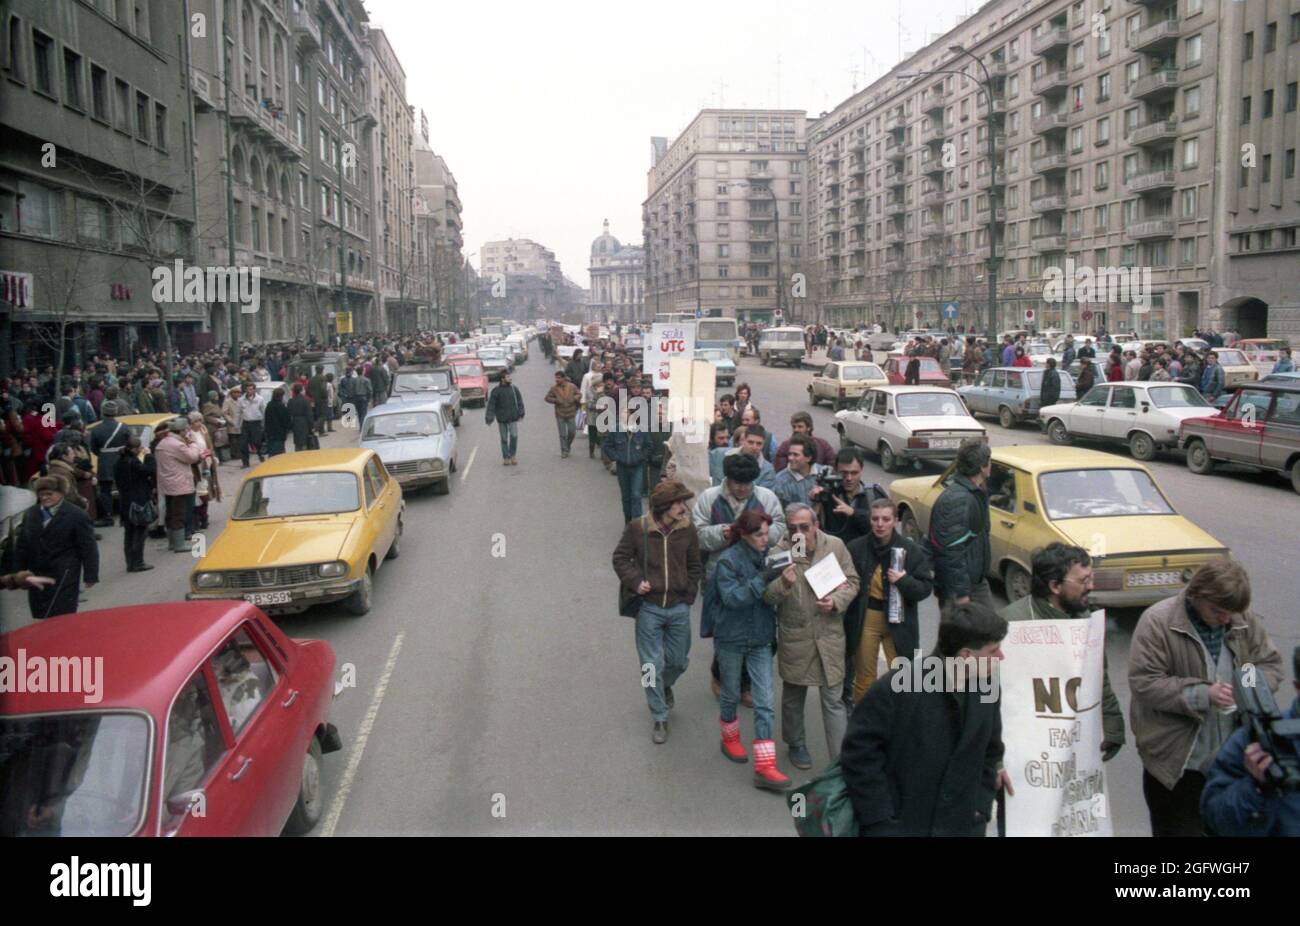 Bukarest, Rumänien,1990. Die Filmemacher treten unmittelbar nach dem Fall des Kommunismus in Hungerstreik, um die Unabhängigkeit vom Kulturministerium (Ministerul Culturii) zu erlangen. Die Forderung der Demonstranten wurde nach 4 Tagen akzeptiert, aber ein Jahr später wurde die rumänische Kinematografie erneut der Regierung untergeordnet. Stockfoto